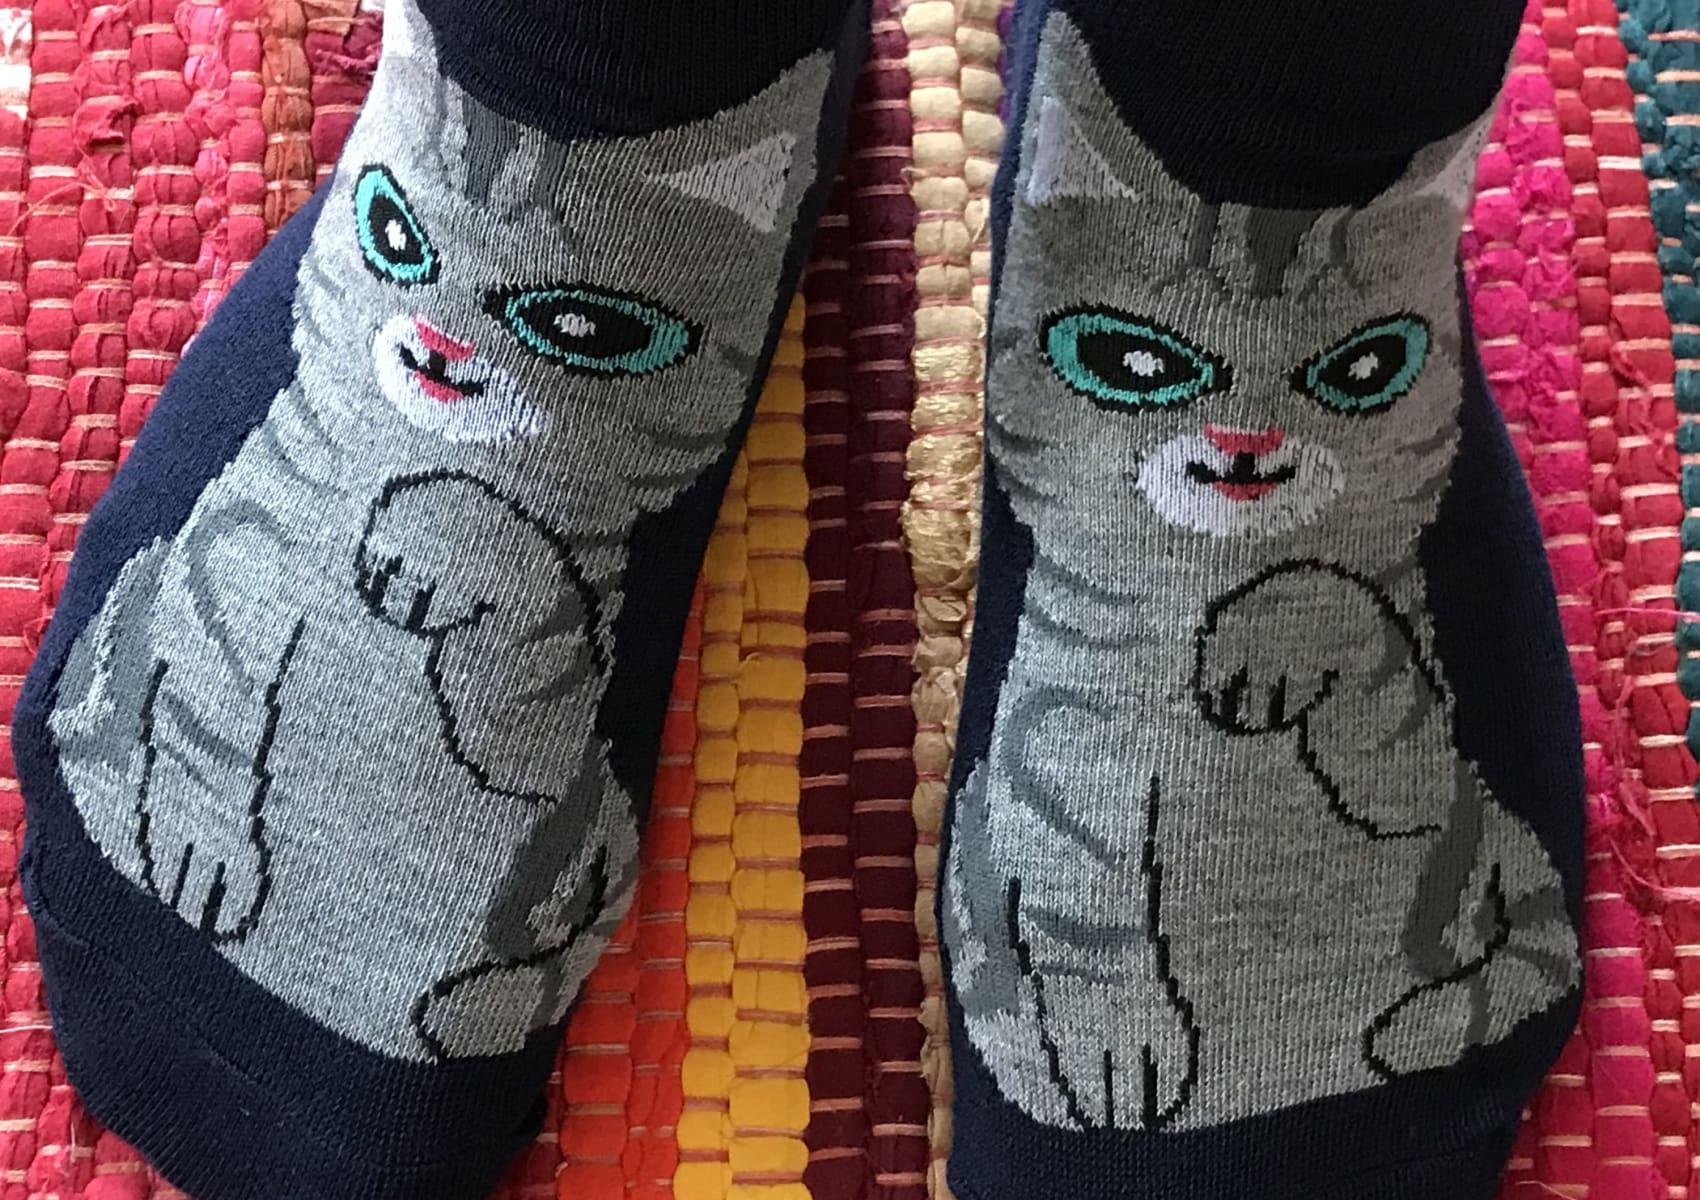 Ladies' dark blue ankle socks with grey American shorthair cat